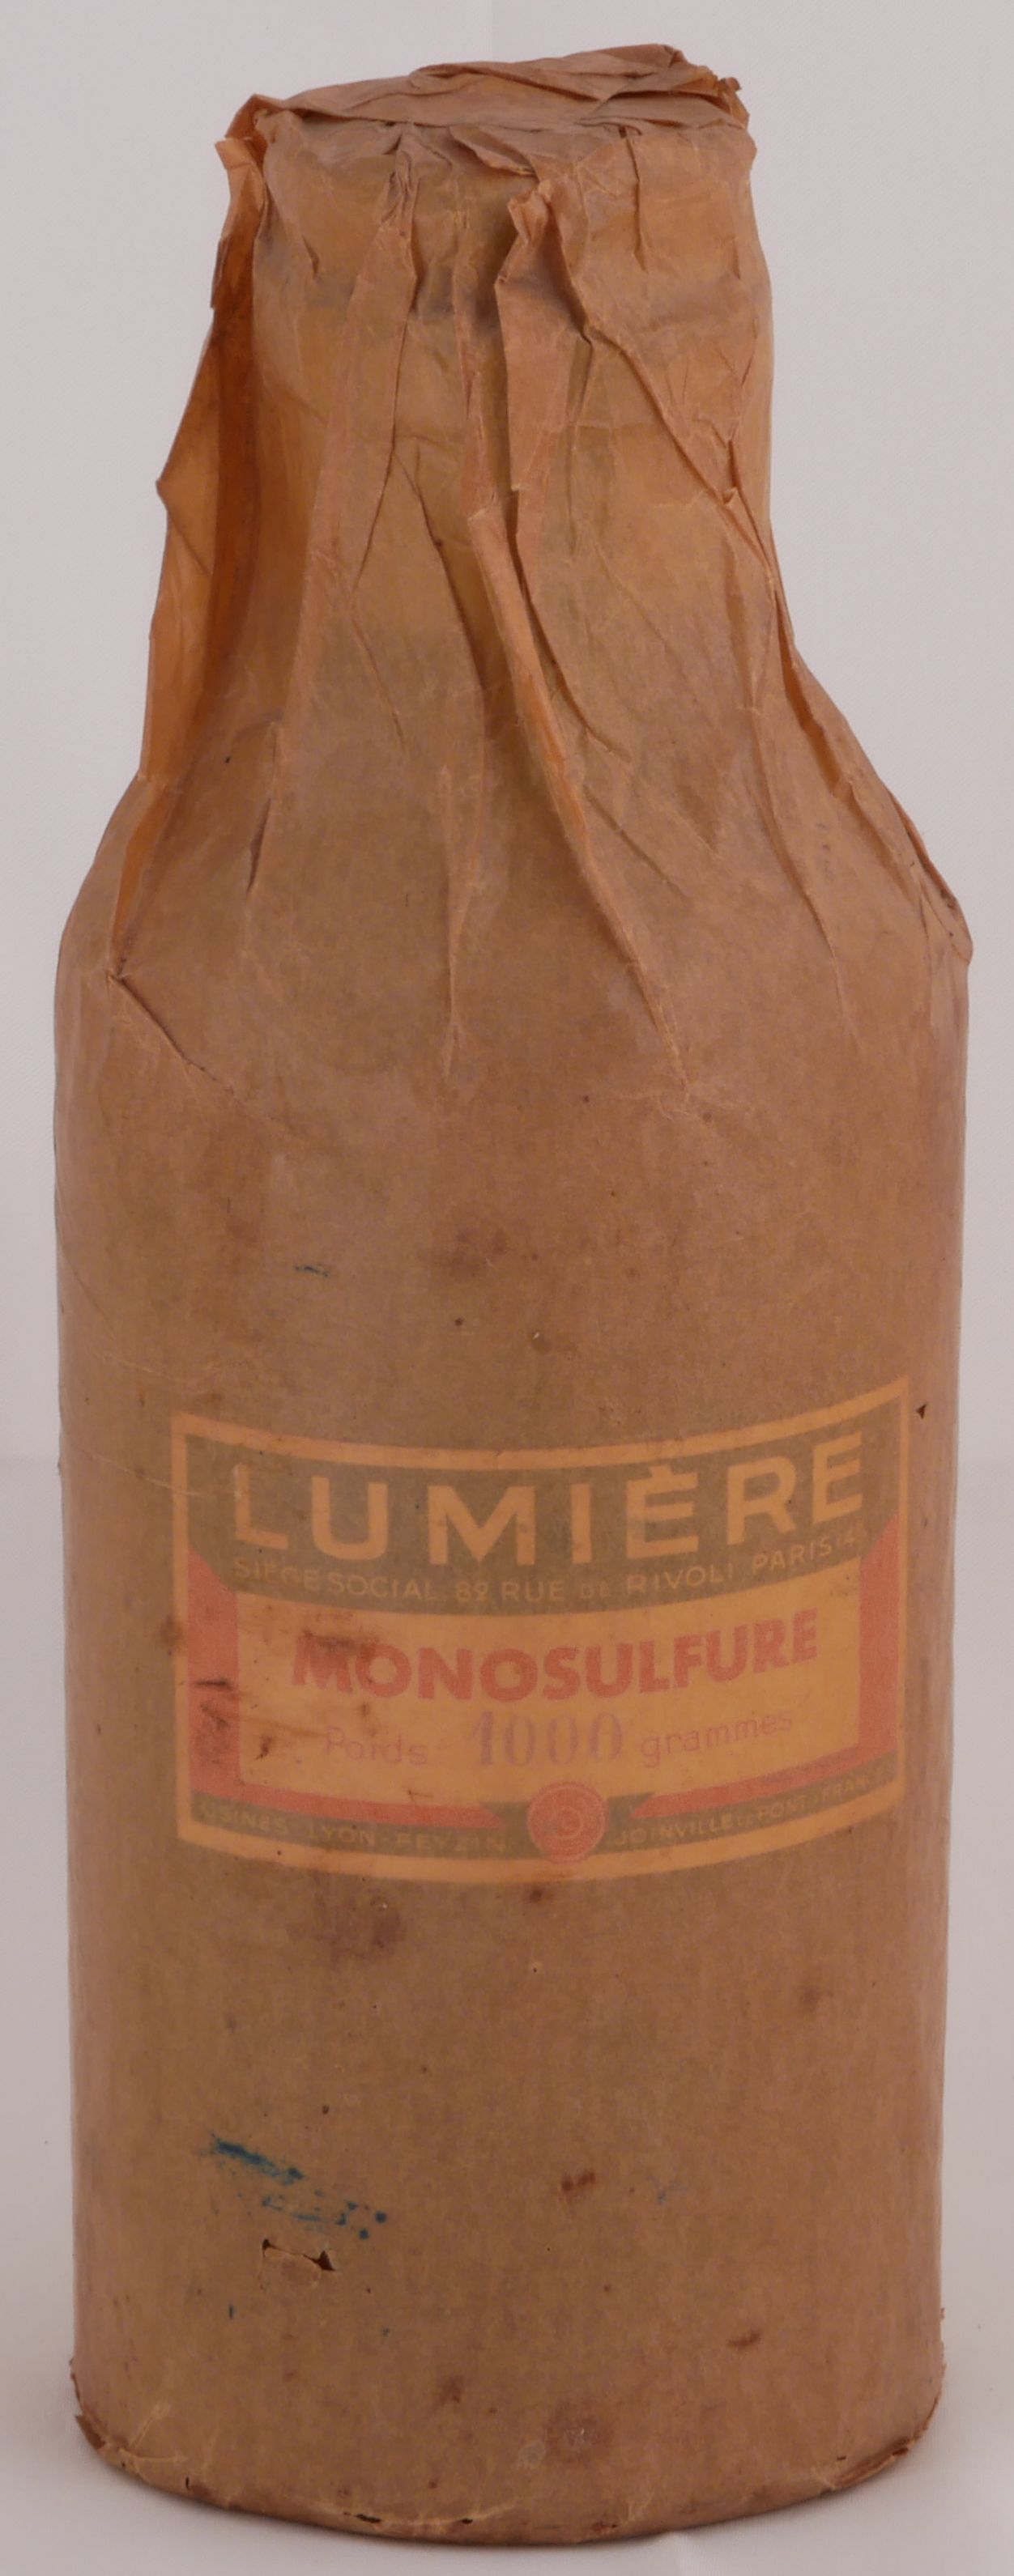 Monosulfure - 1000 g